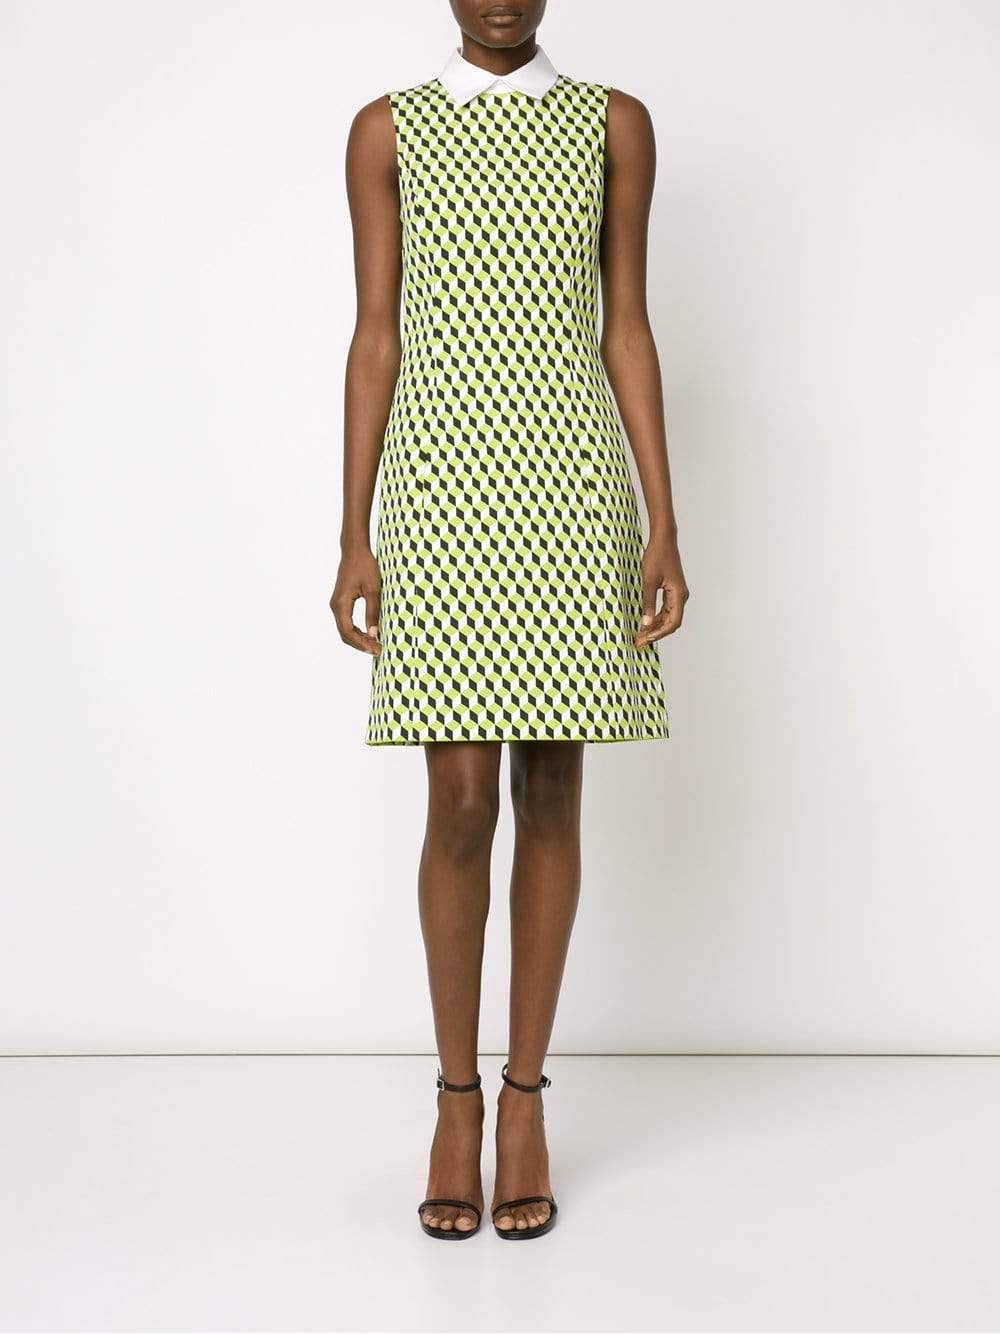 Cubism Collar Dress CLOTHINGDRESSCASUAL MICHAEL KORS   